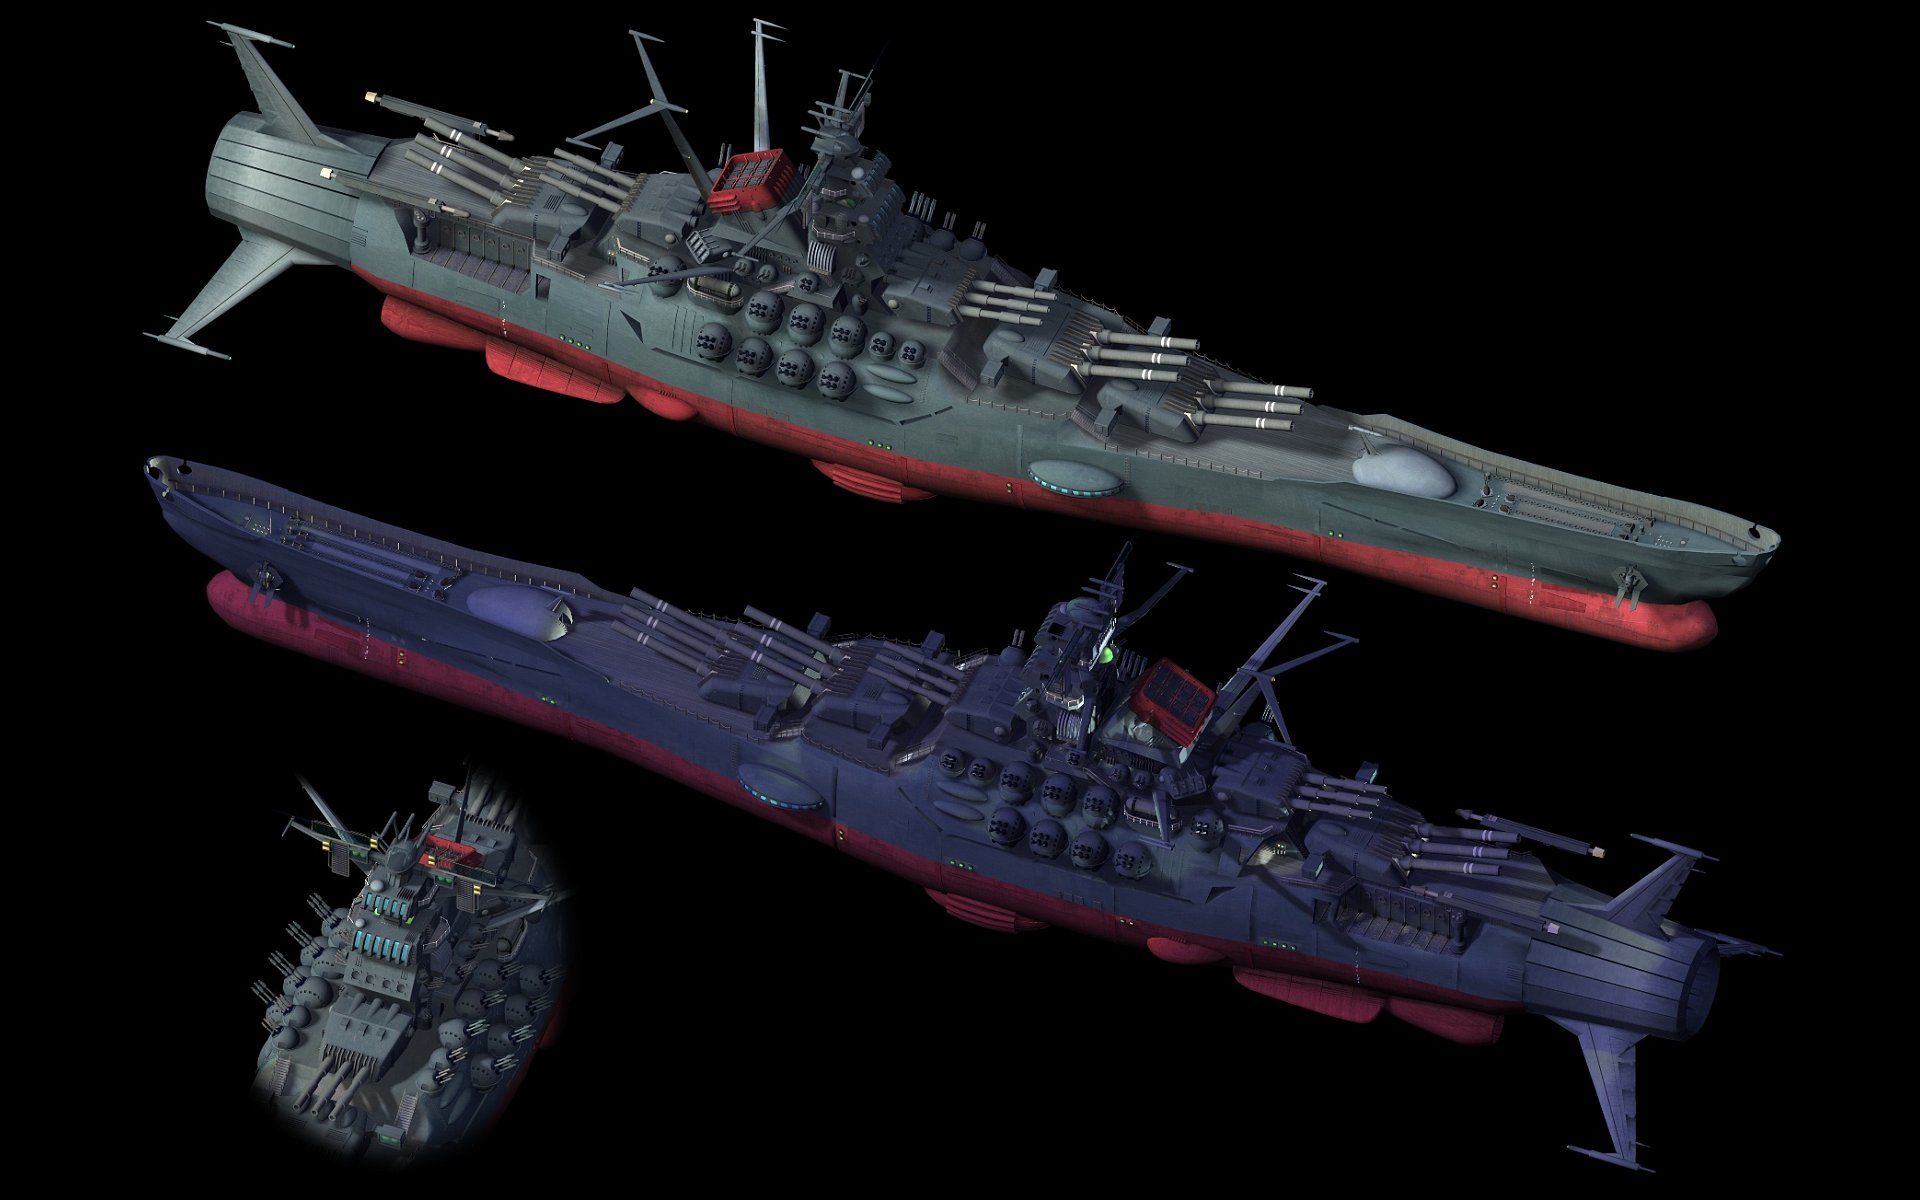 Battleship Yamato Computer Wallpaper, Desktop Background 1920x1200 Id: 151254. Space battleship, Battleship, Space ship concept art